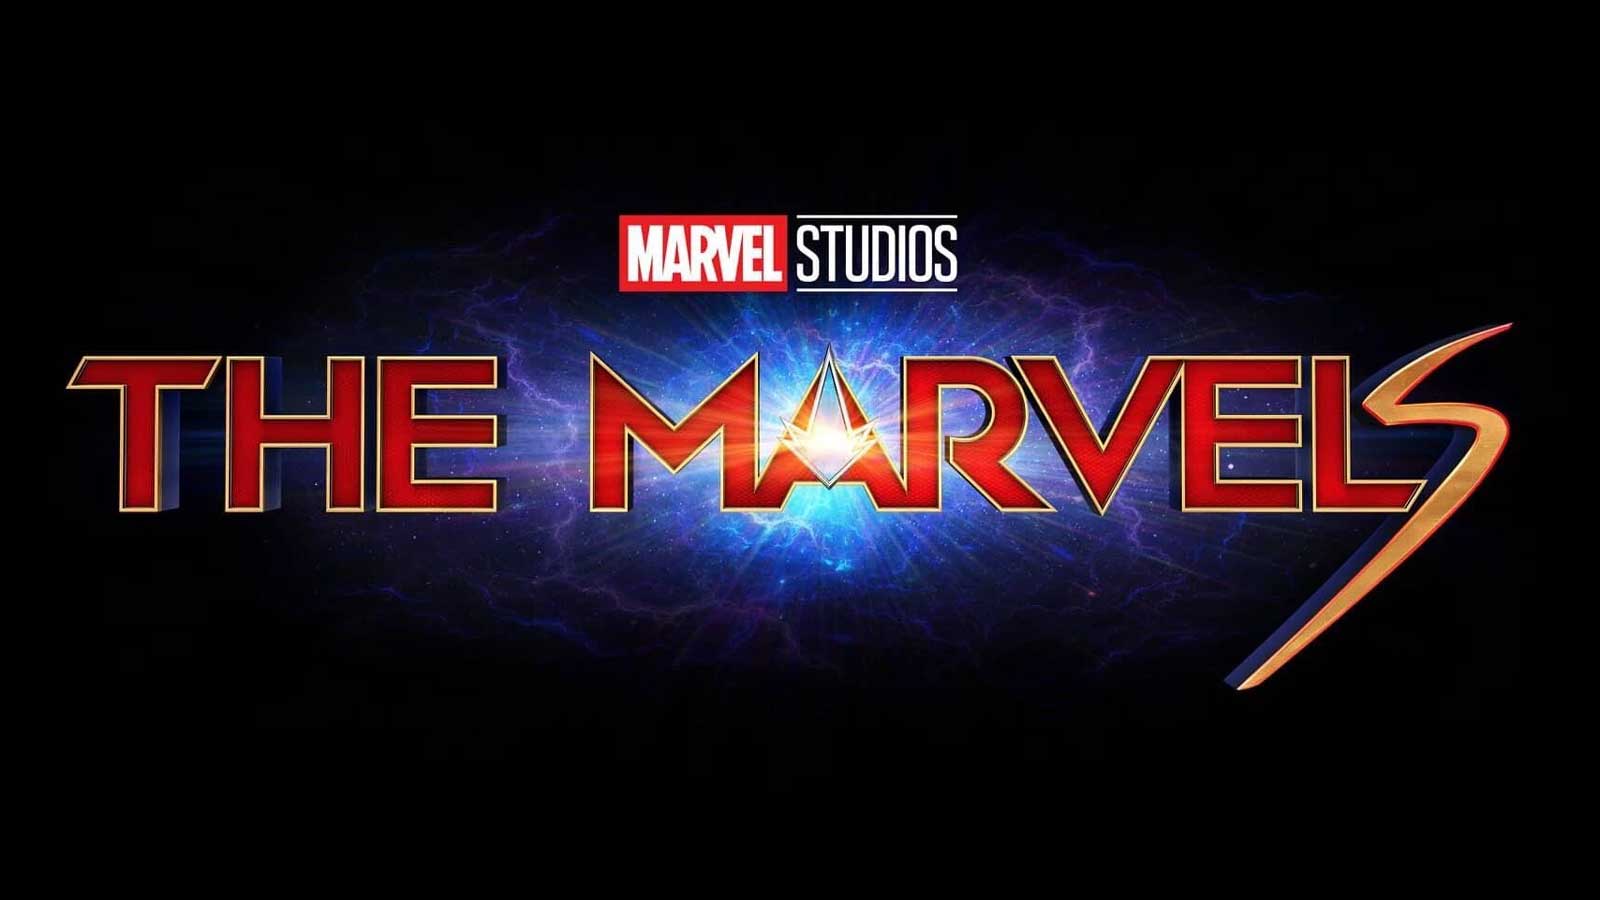 لوگو رسمی فیلم ابرقهرمانی The Marvels (مارول ها) از دنیای سینمایی مارول، یکی از مورد انتظارترین فیلم های ۲۰۲۳